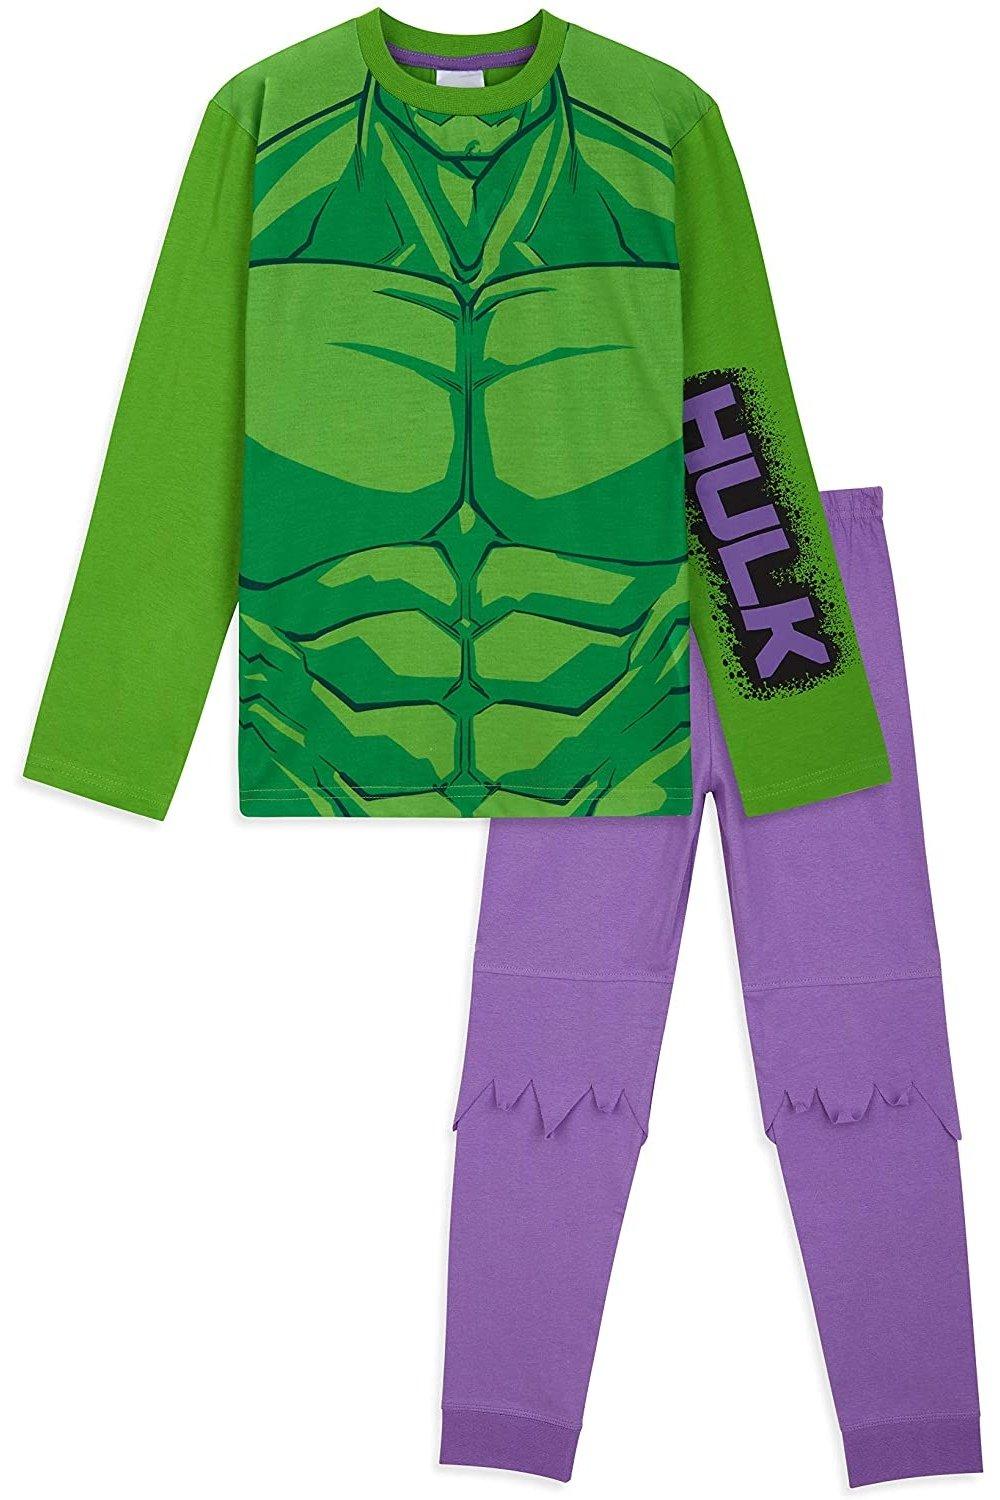 Hulk Pyjama Set